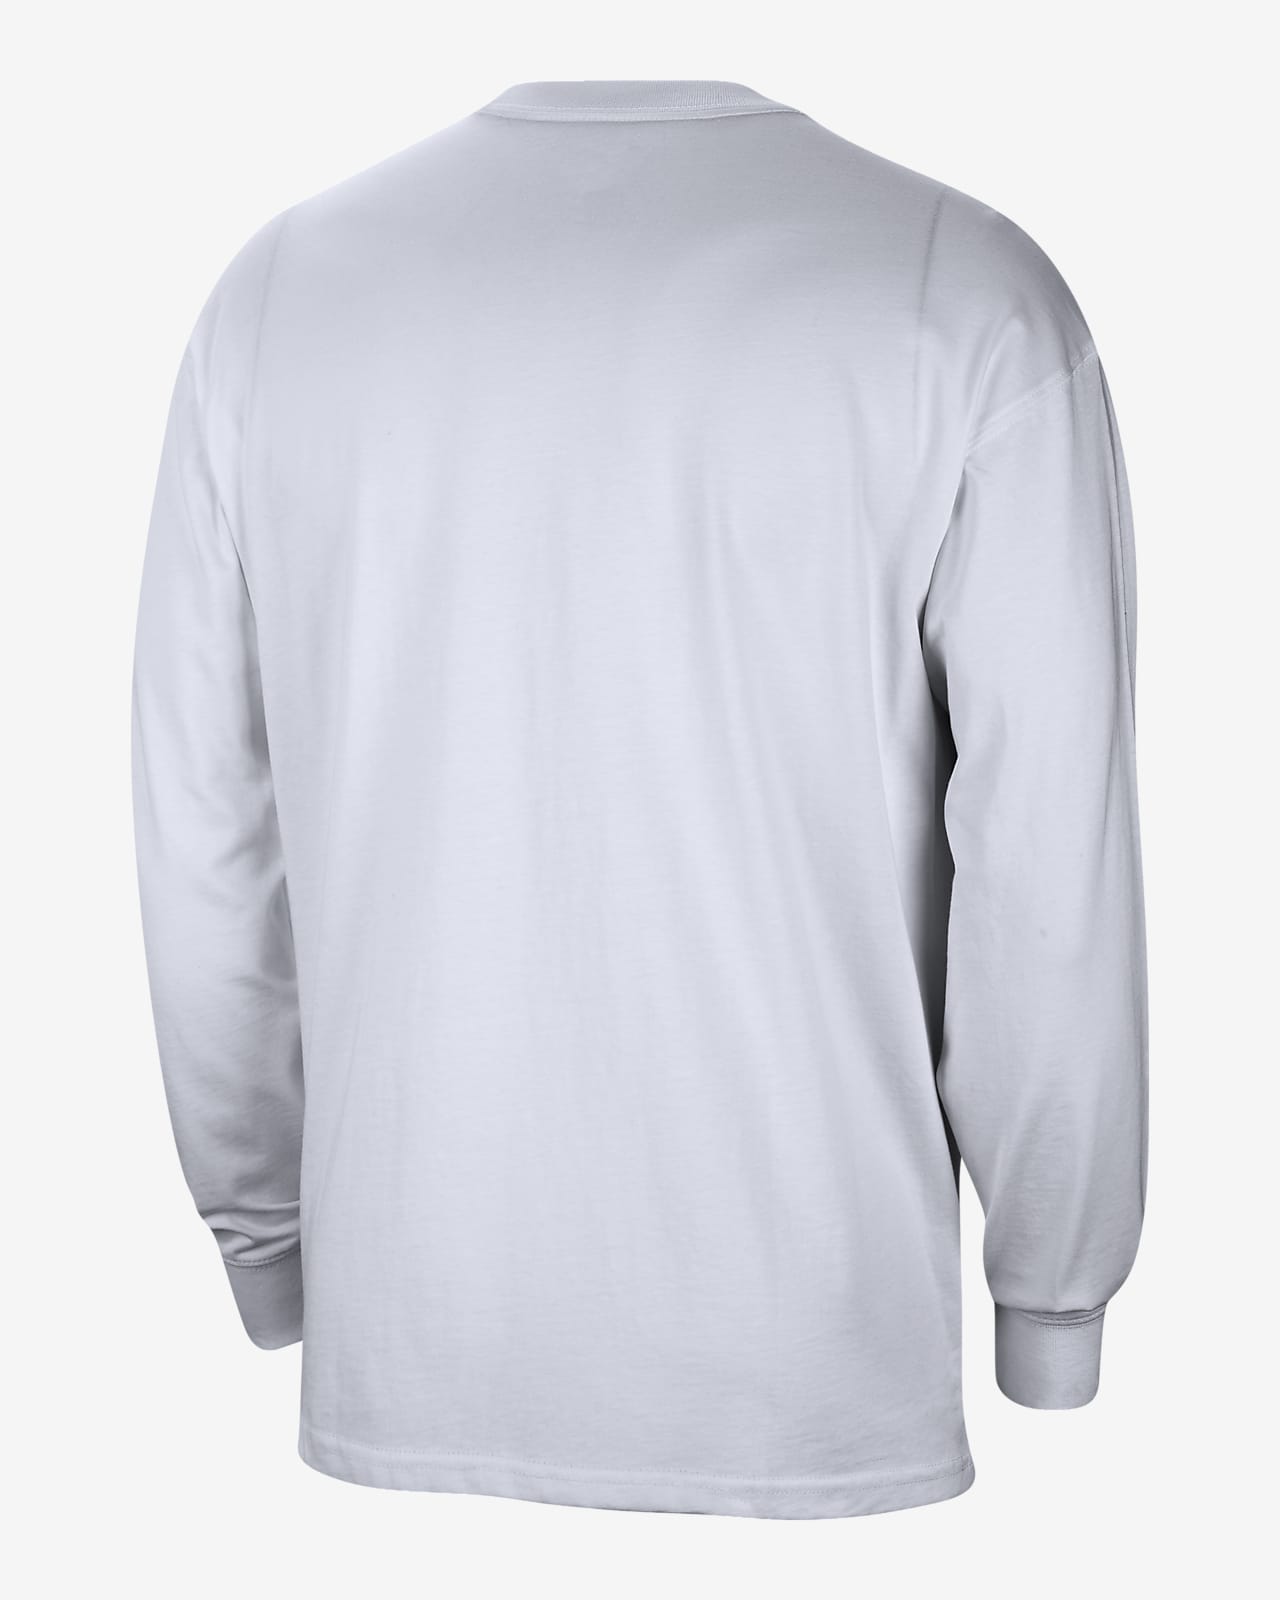 KF901 Crewneck Long Sleeve Shirt